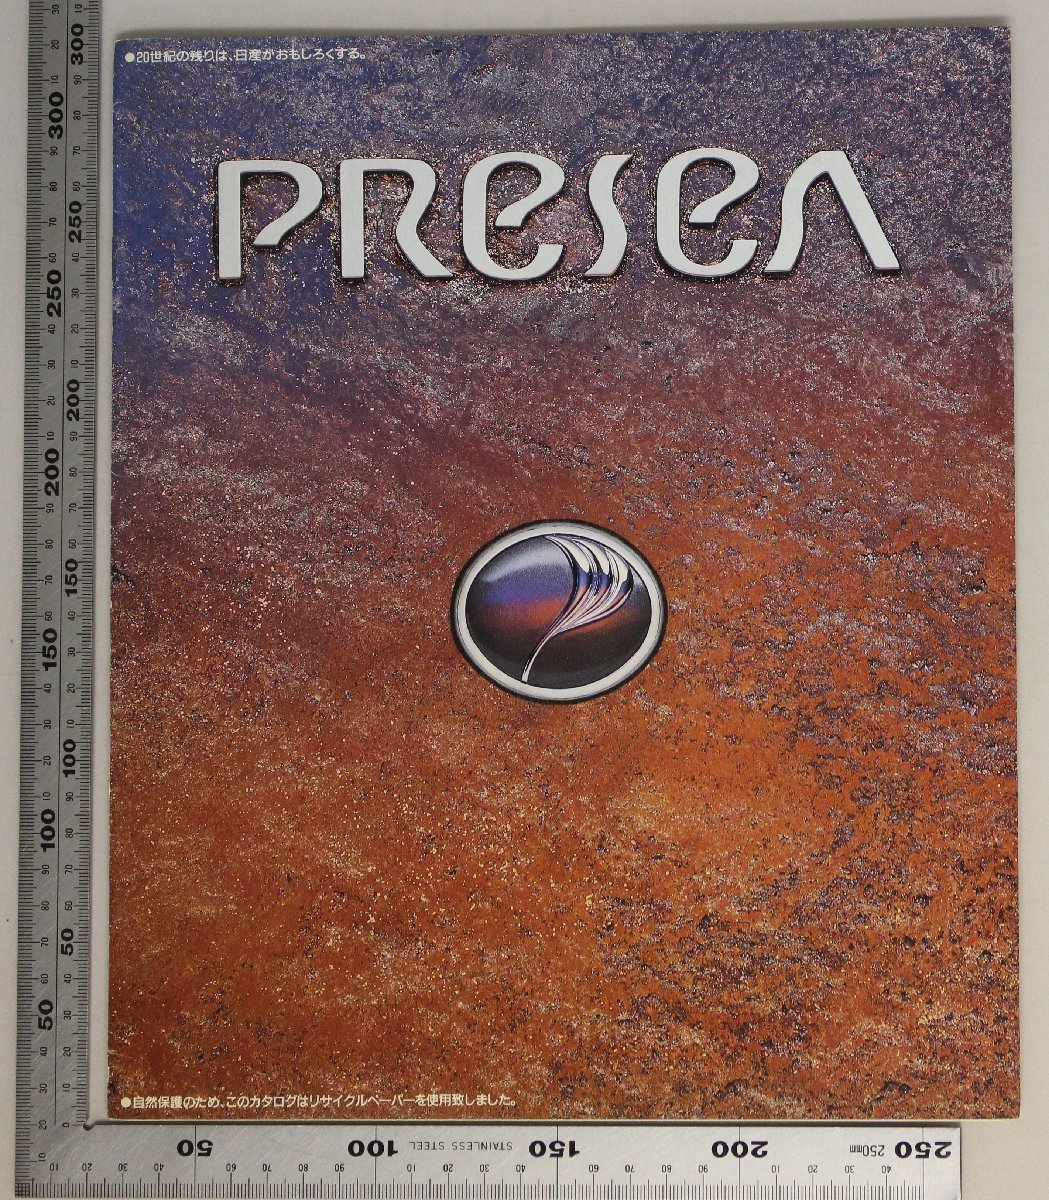 自動車カタログ『PReSeA』1991年 NISSAN 補足:プレセア1800Ct.2マリーンブルーメーターボディカラーツイード本革インテリアメカニズム_画像1